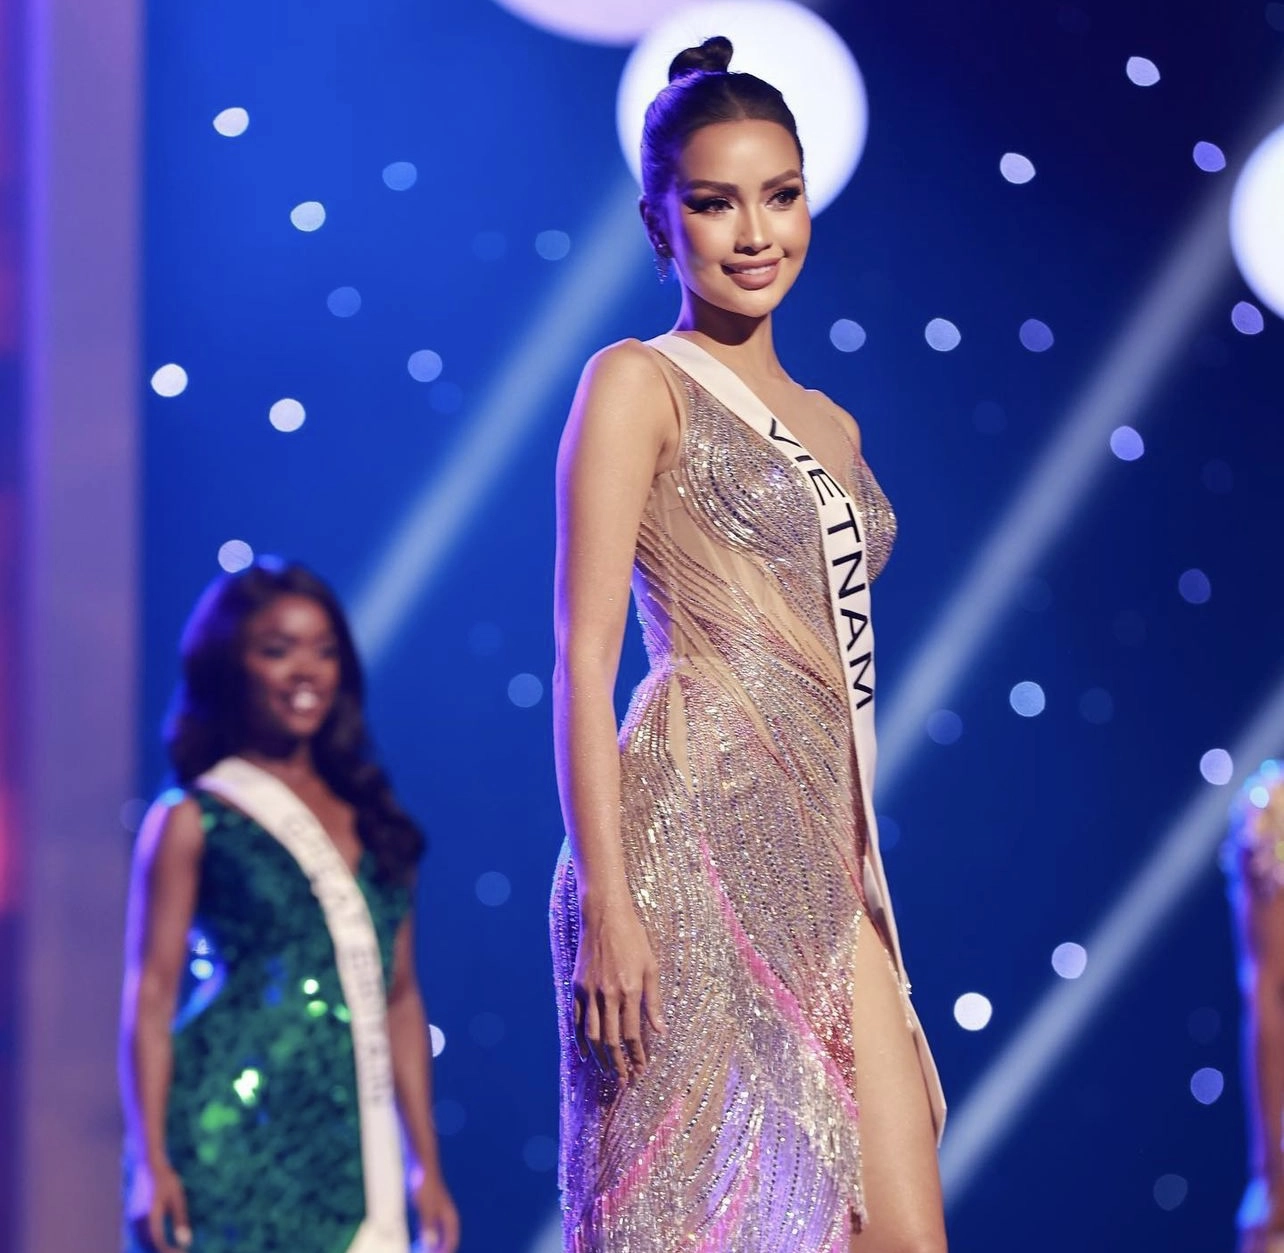 Ngọc Châu lần đầu chia sẻ sau khi bị loại khỏi Top 16 Hoa hậu Hoàn vũ: Xin lỗi vì không thể cho hai tiếng Việt Nam được hô vang - Ảnh 2.